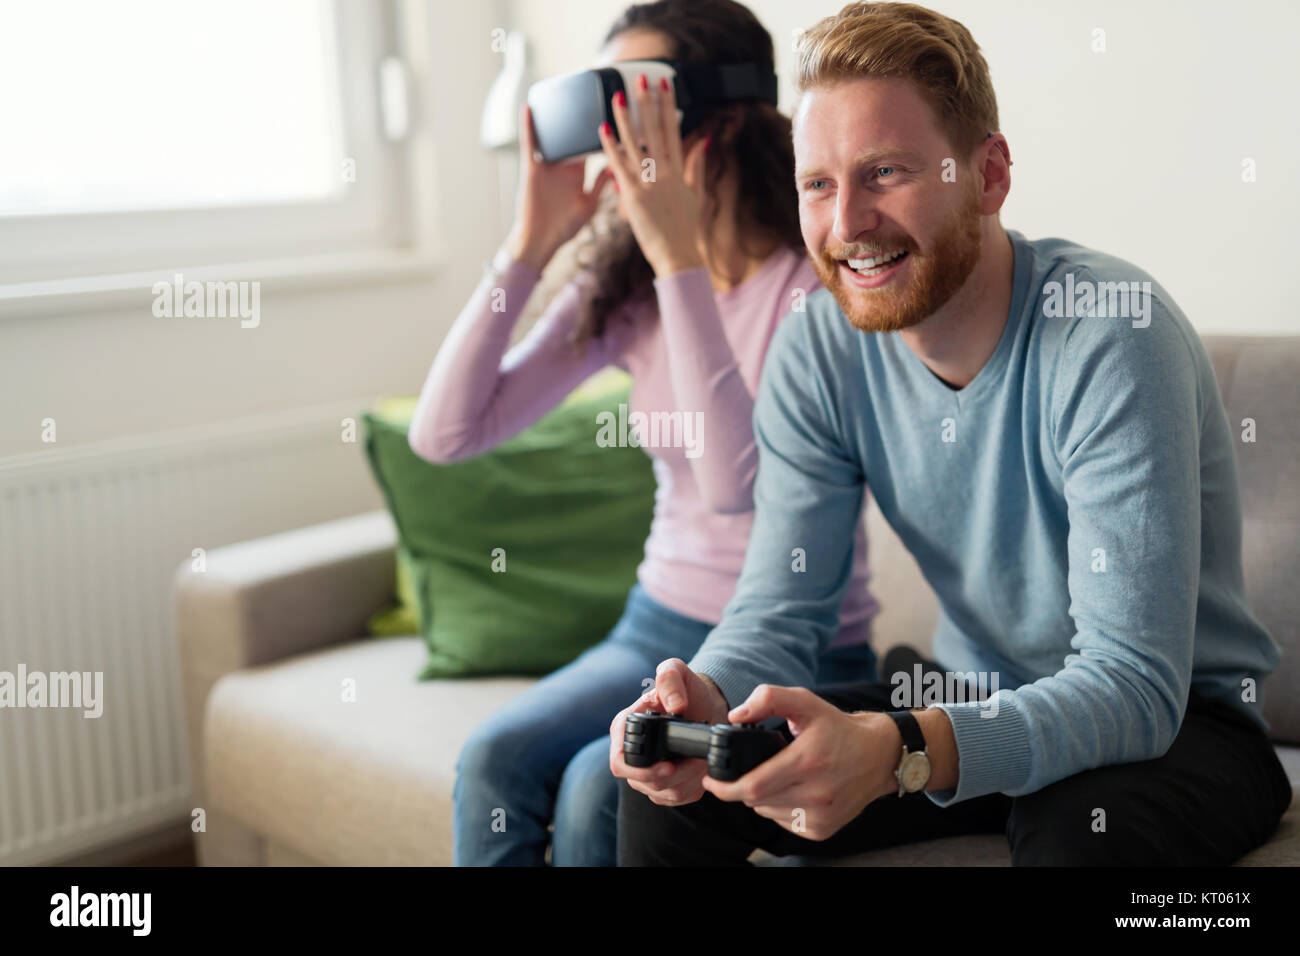 Glückliches junges Paar Spielen von Videospielen mit Virtual reality Headsets Stockfoto